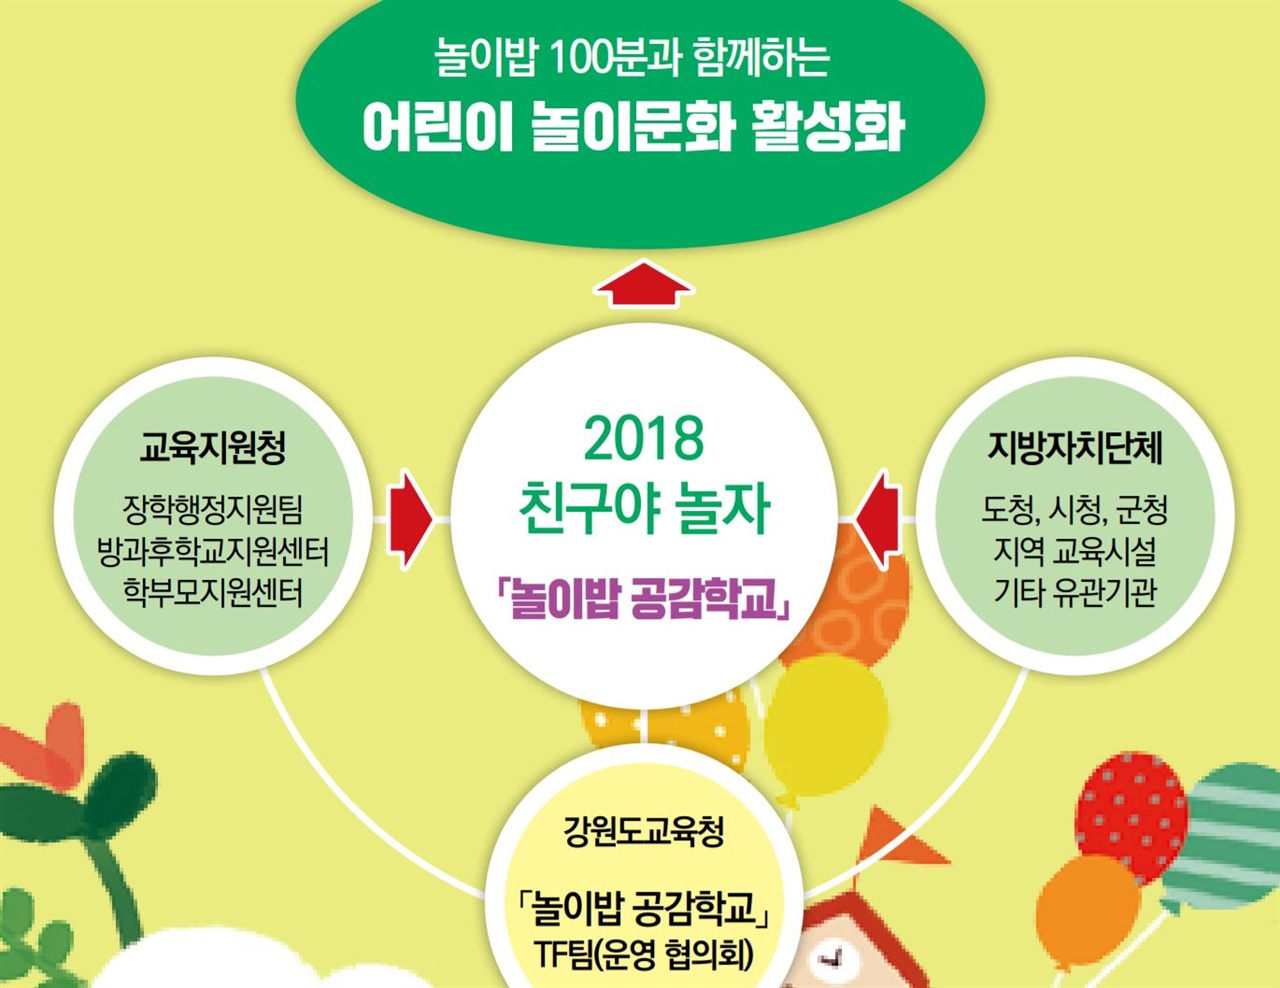 강원도교육청이 만든 '놀이밥 공감학교' 홍보책자 내용. 